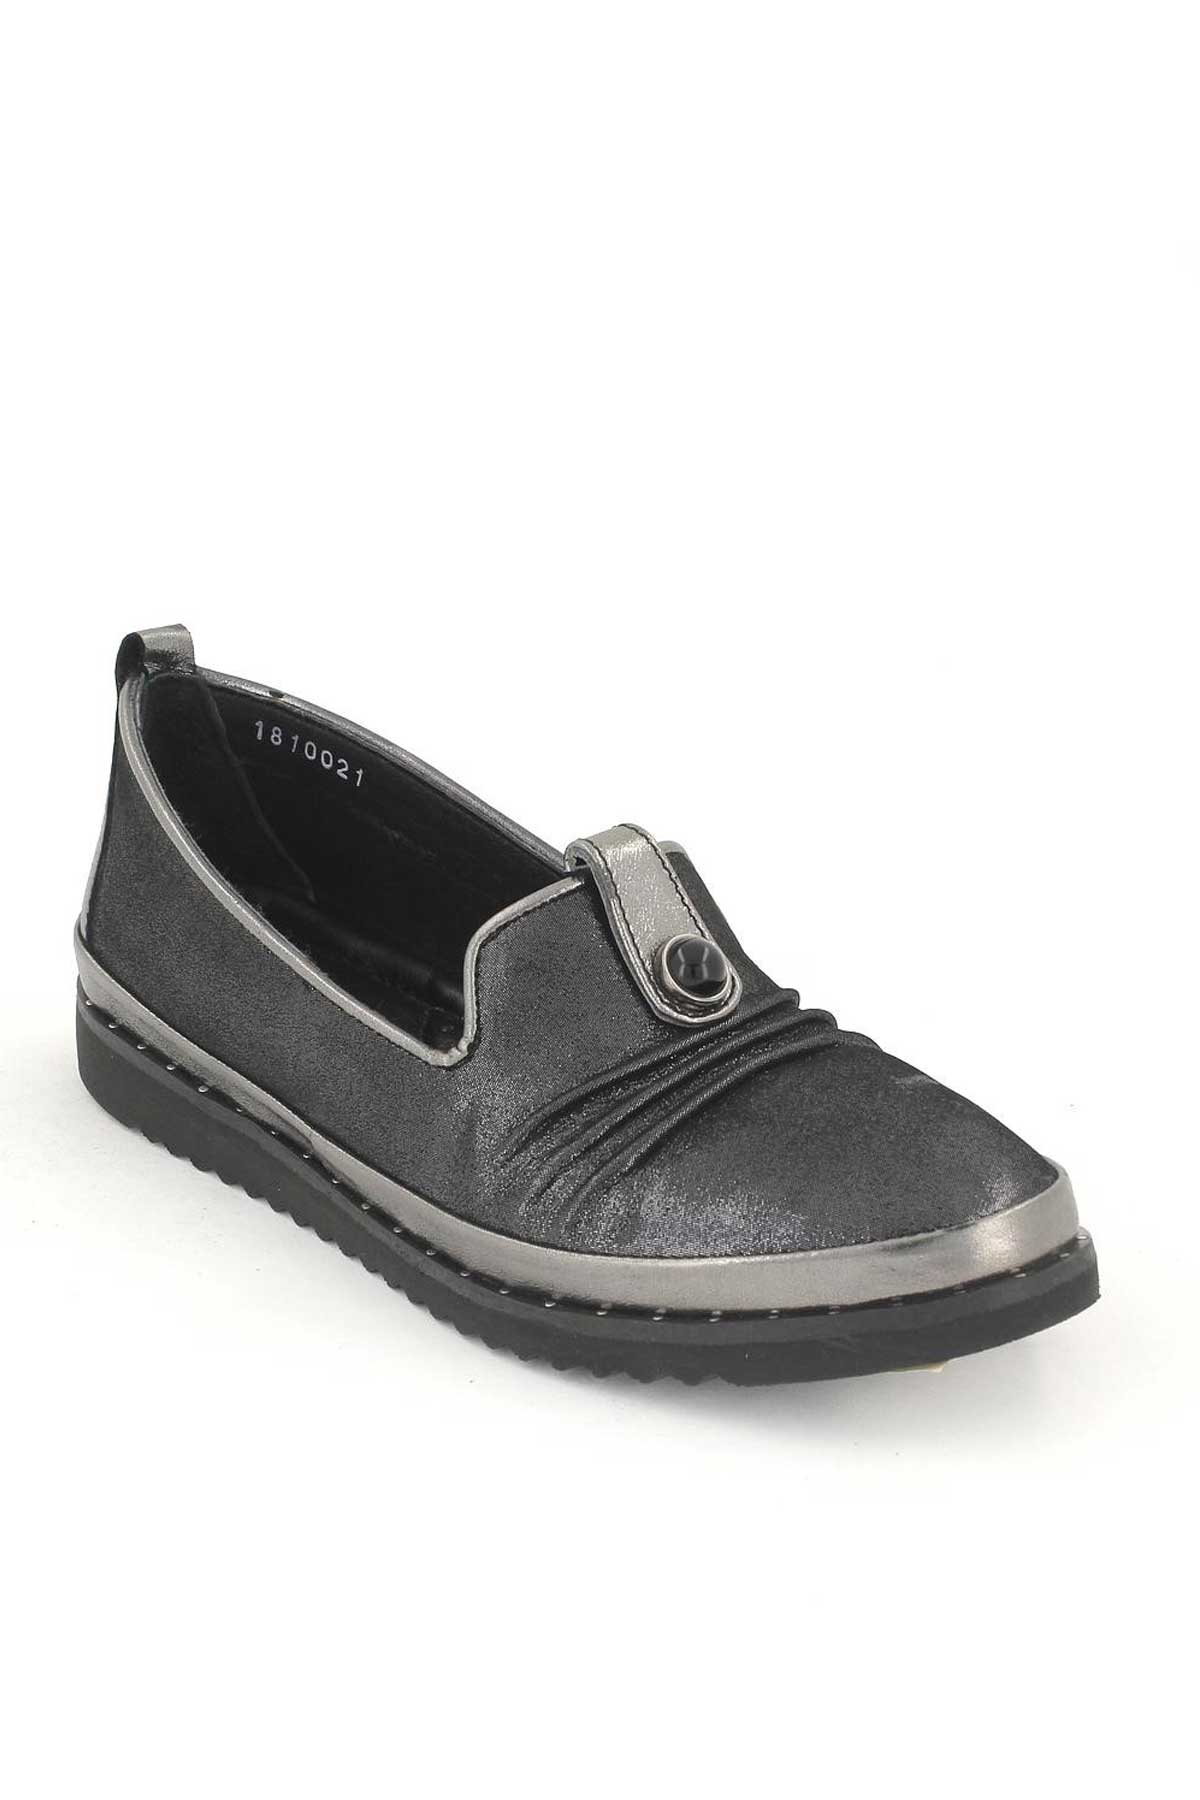 Kadın Deri Comfort Ayakkabı Platin 1810021K - Thumbnail